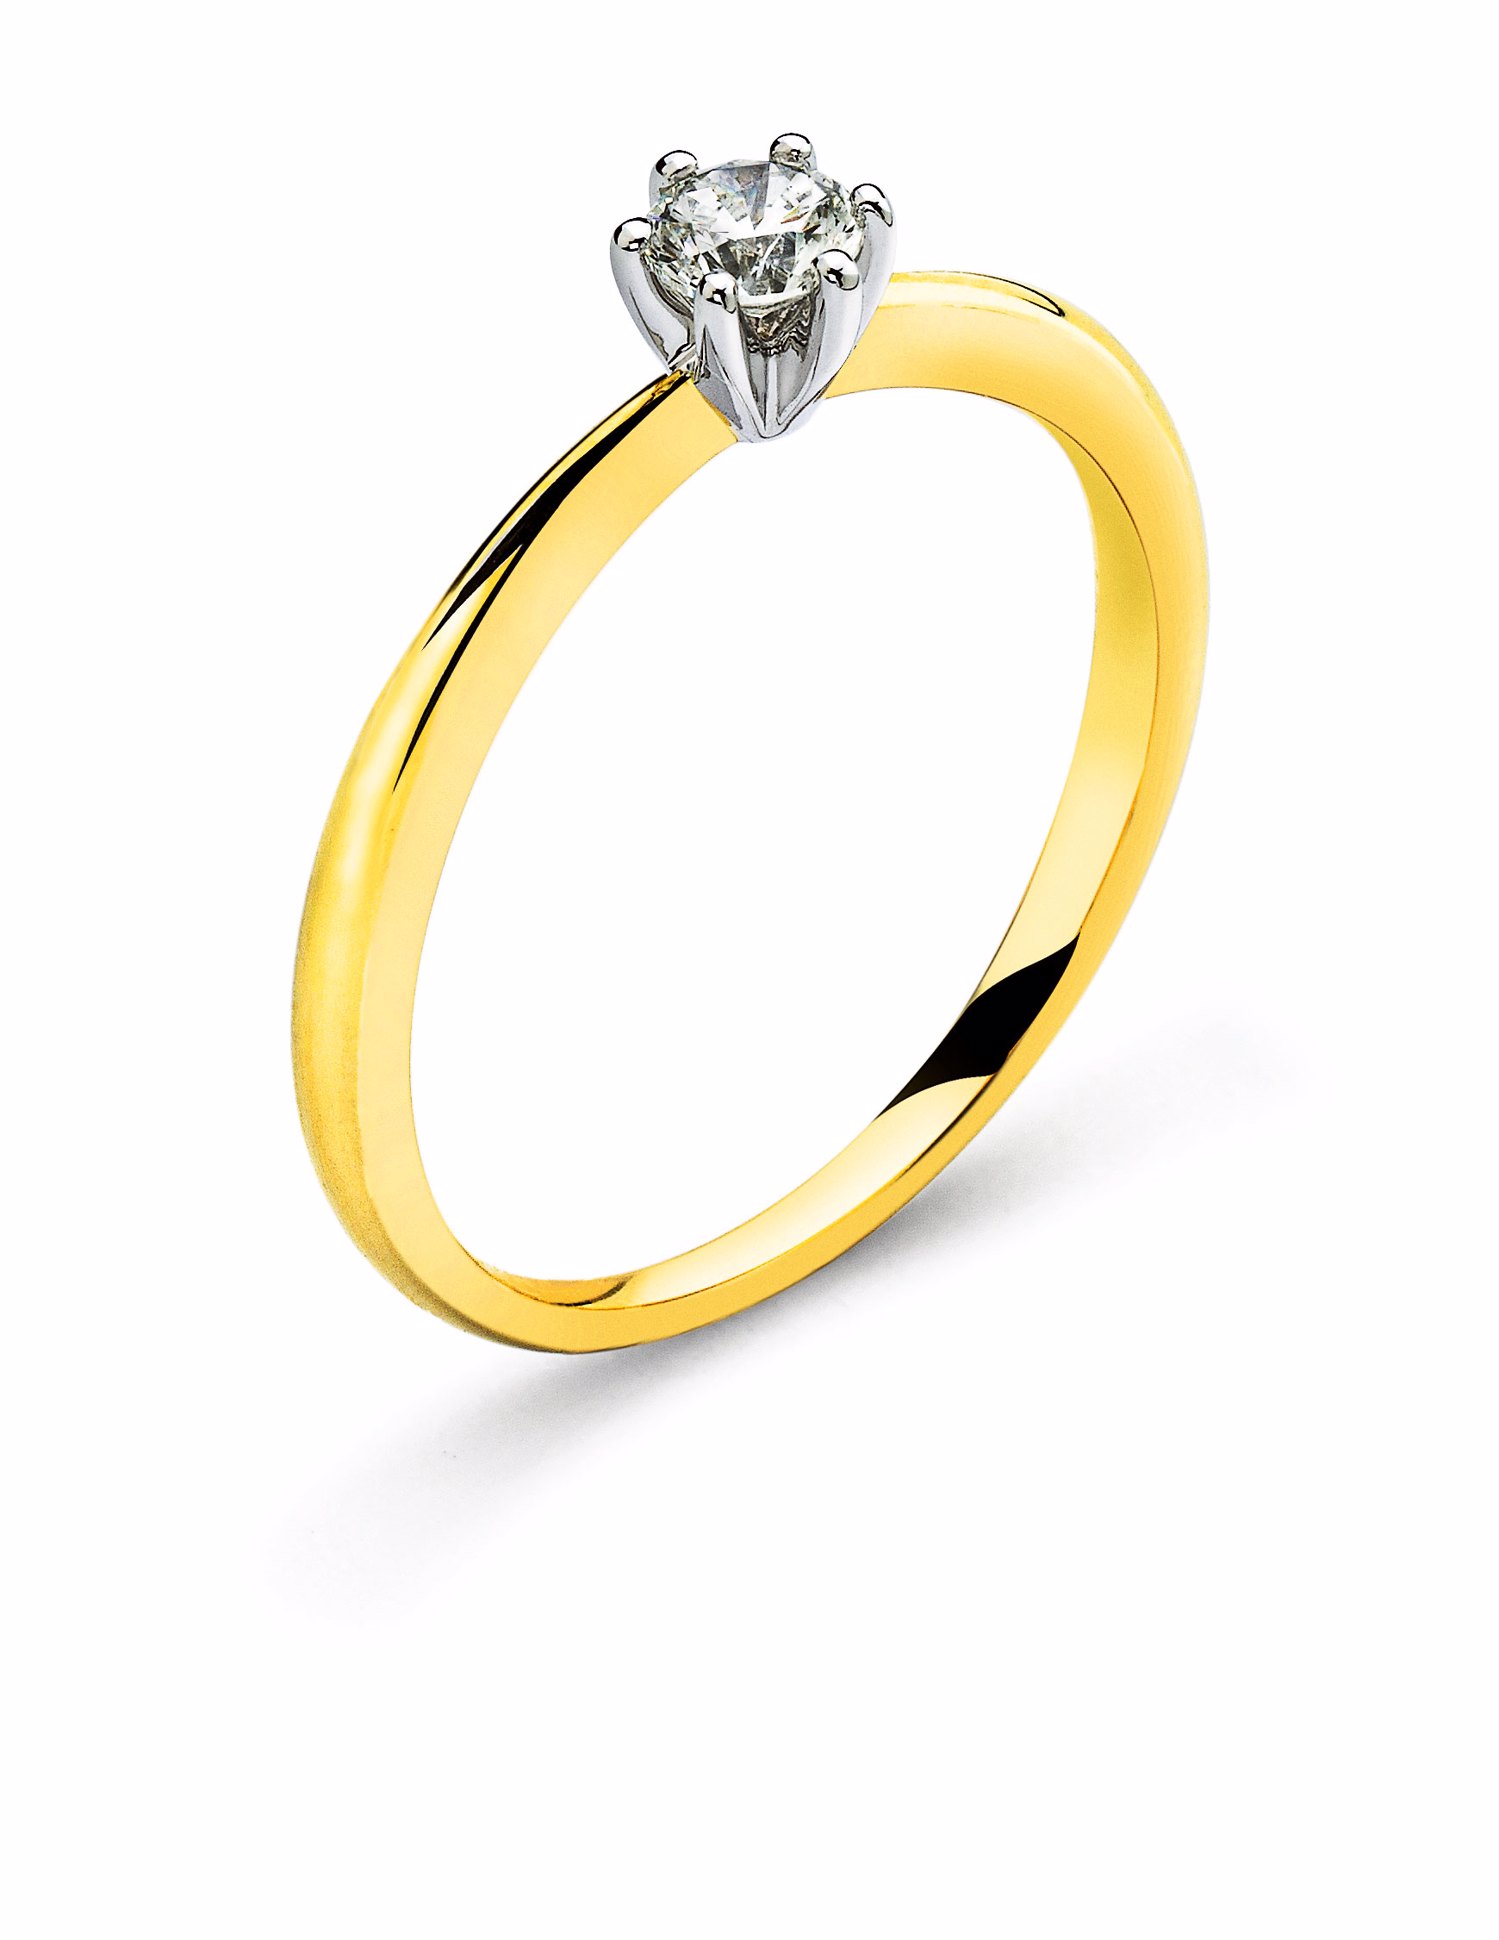 AURONOS Prestige Solitär Ring Gelbgold 18K, Fassung Weissgold Diamant 0.25ct